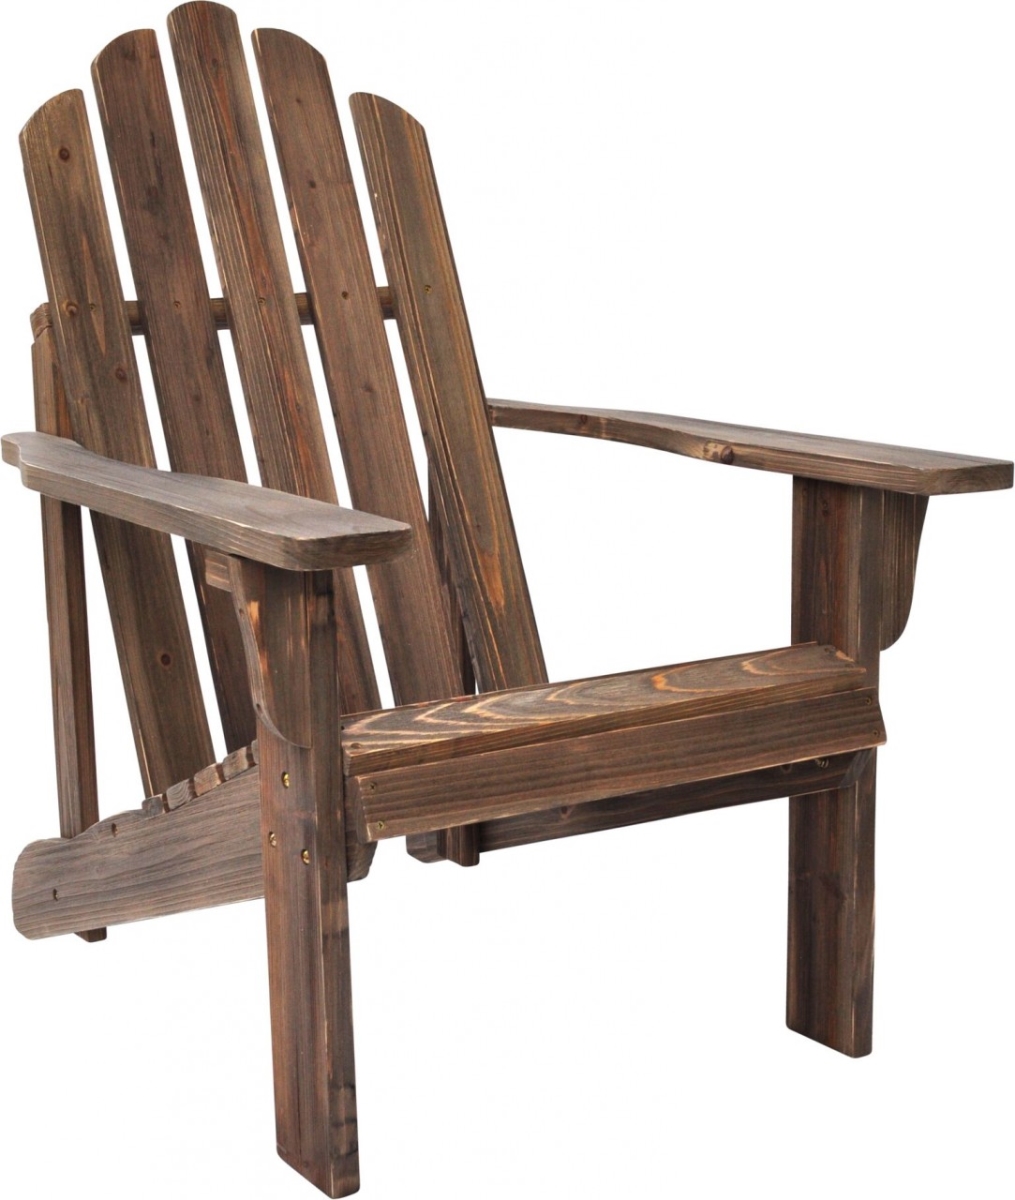 Shineco 5618ba Rustic Adirondack Chair, Barnwood